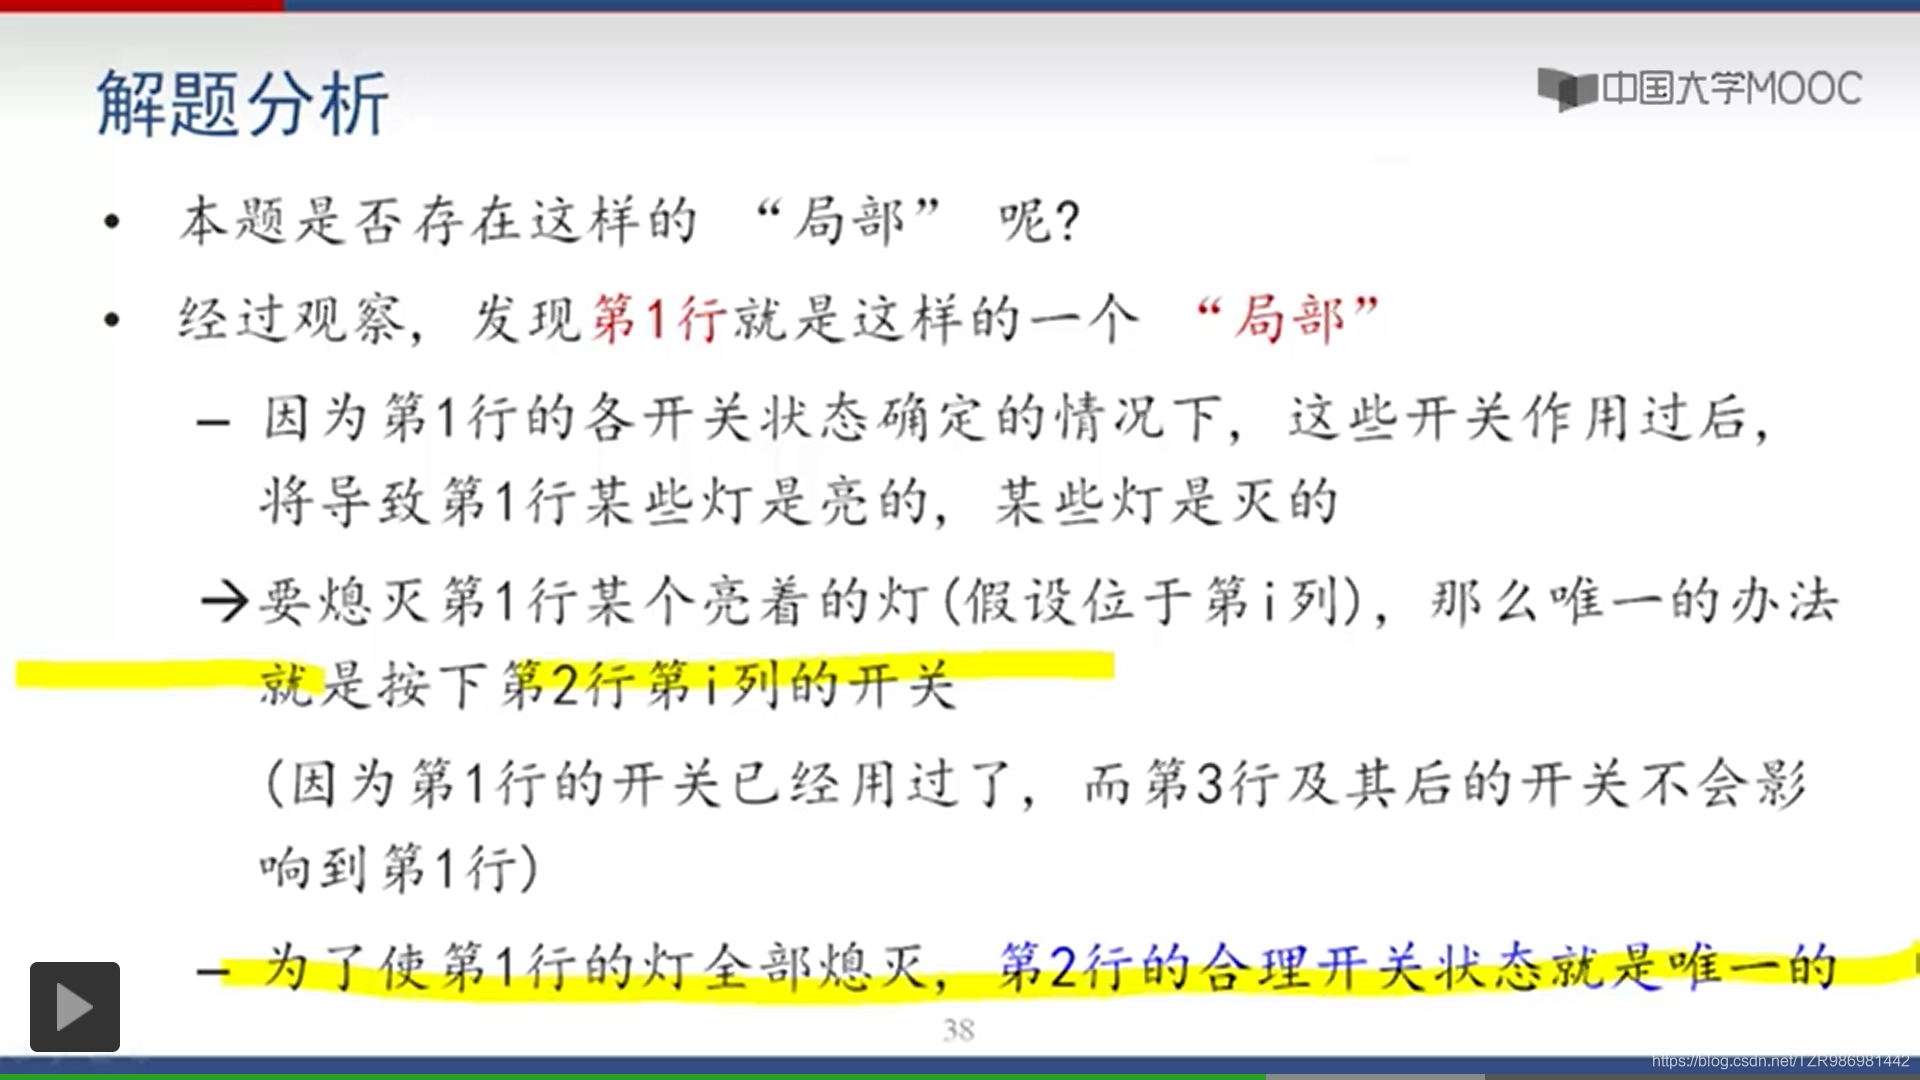 [笔记][中国大学mooc][程序设计与算法（二） 算法基础][枚举][局部枚举法] POJ1222 熄灯问题